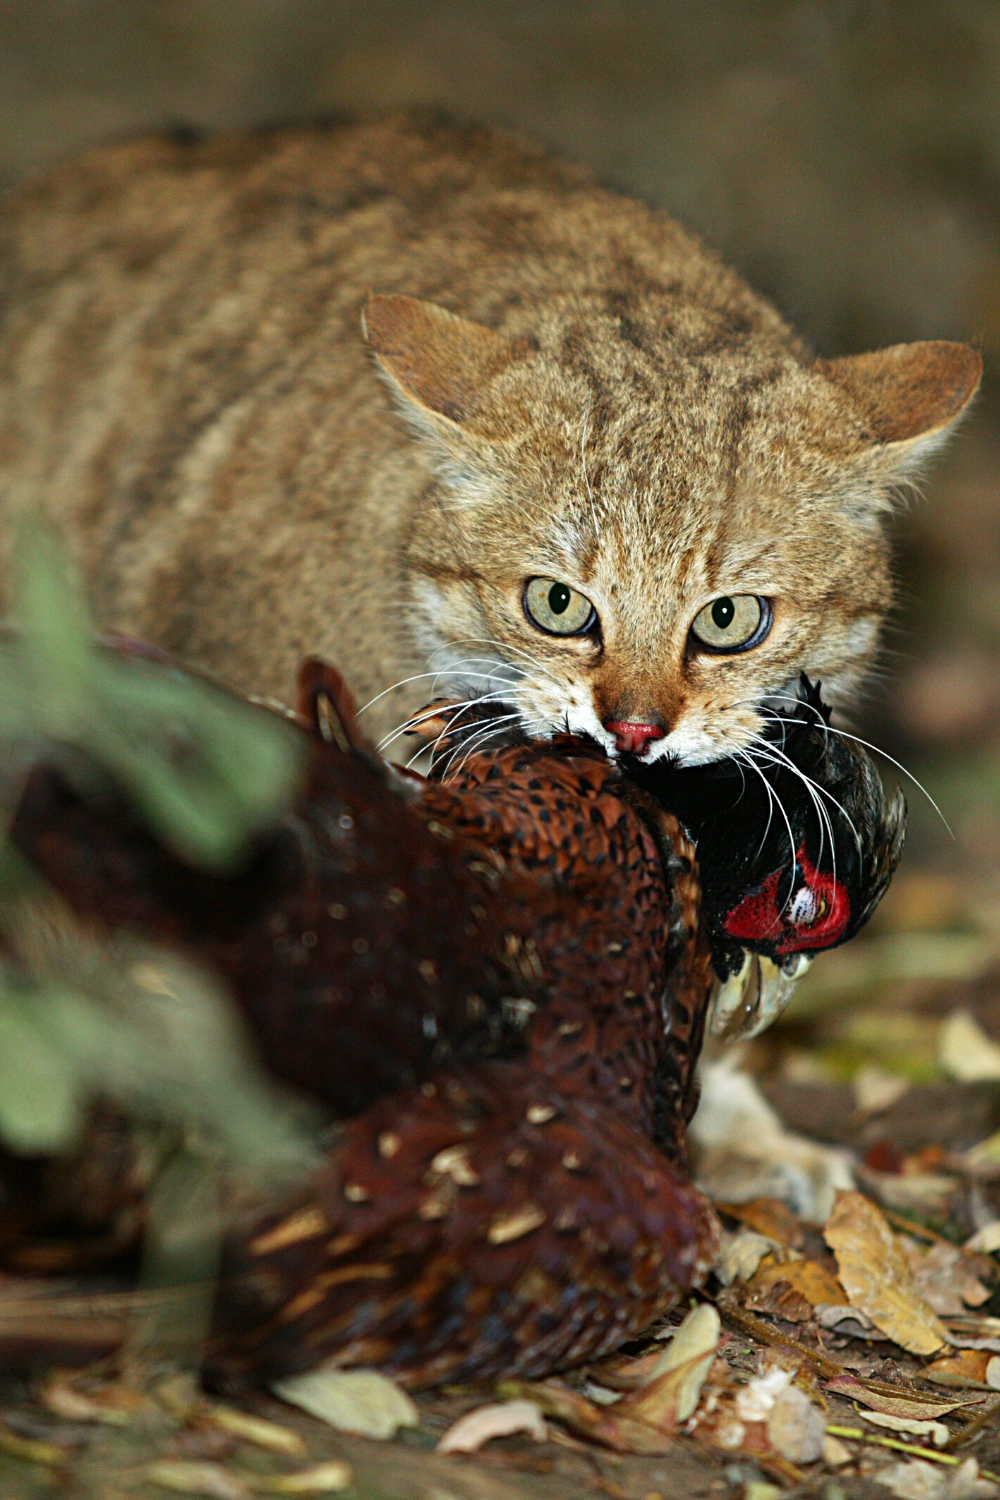 Les grands chats sauvages mangent des proies plus grosses et plus rassasiantes comme les chauves-souris, les lapins sauvages et parfois des oiseaux